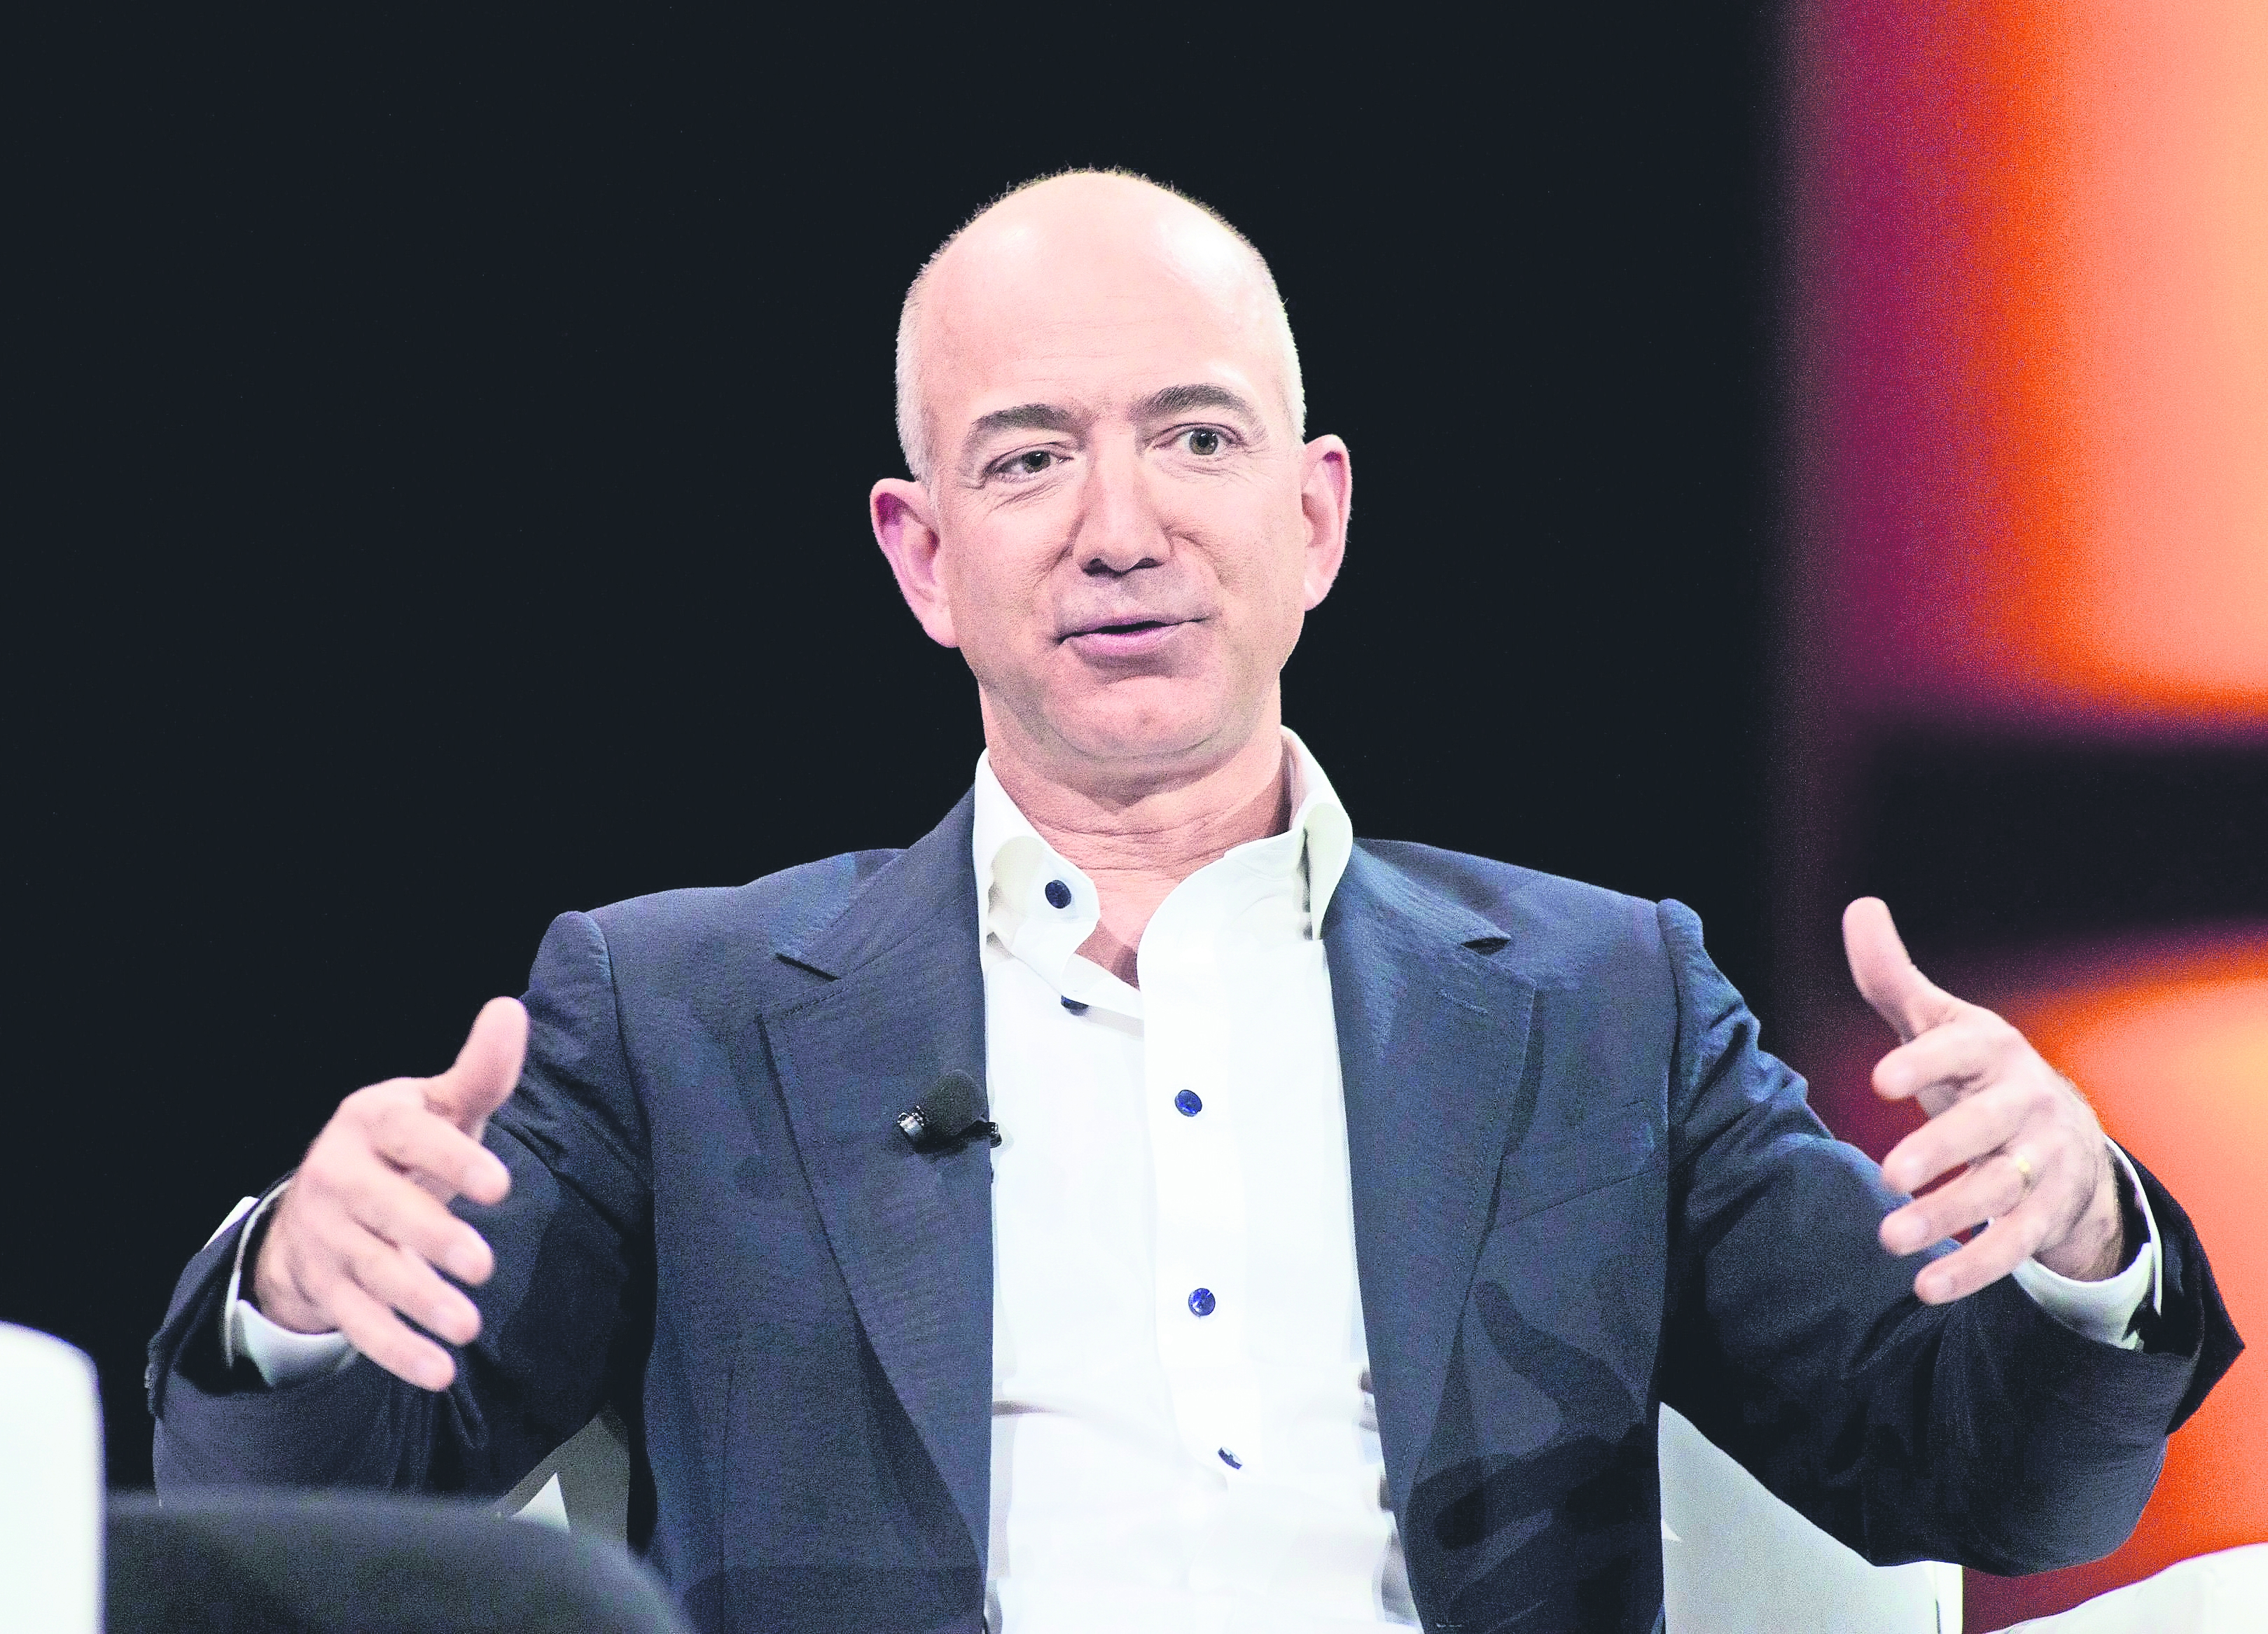 Fortuna de Jeff Bezos roza los 100 mil mdd durante el "Black Friday"